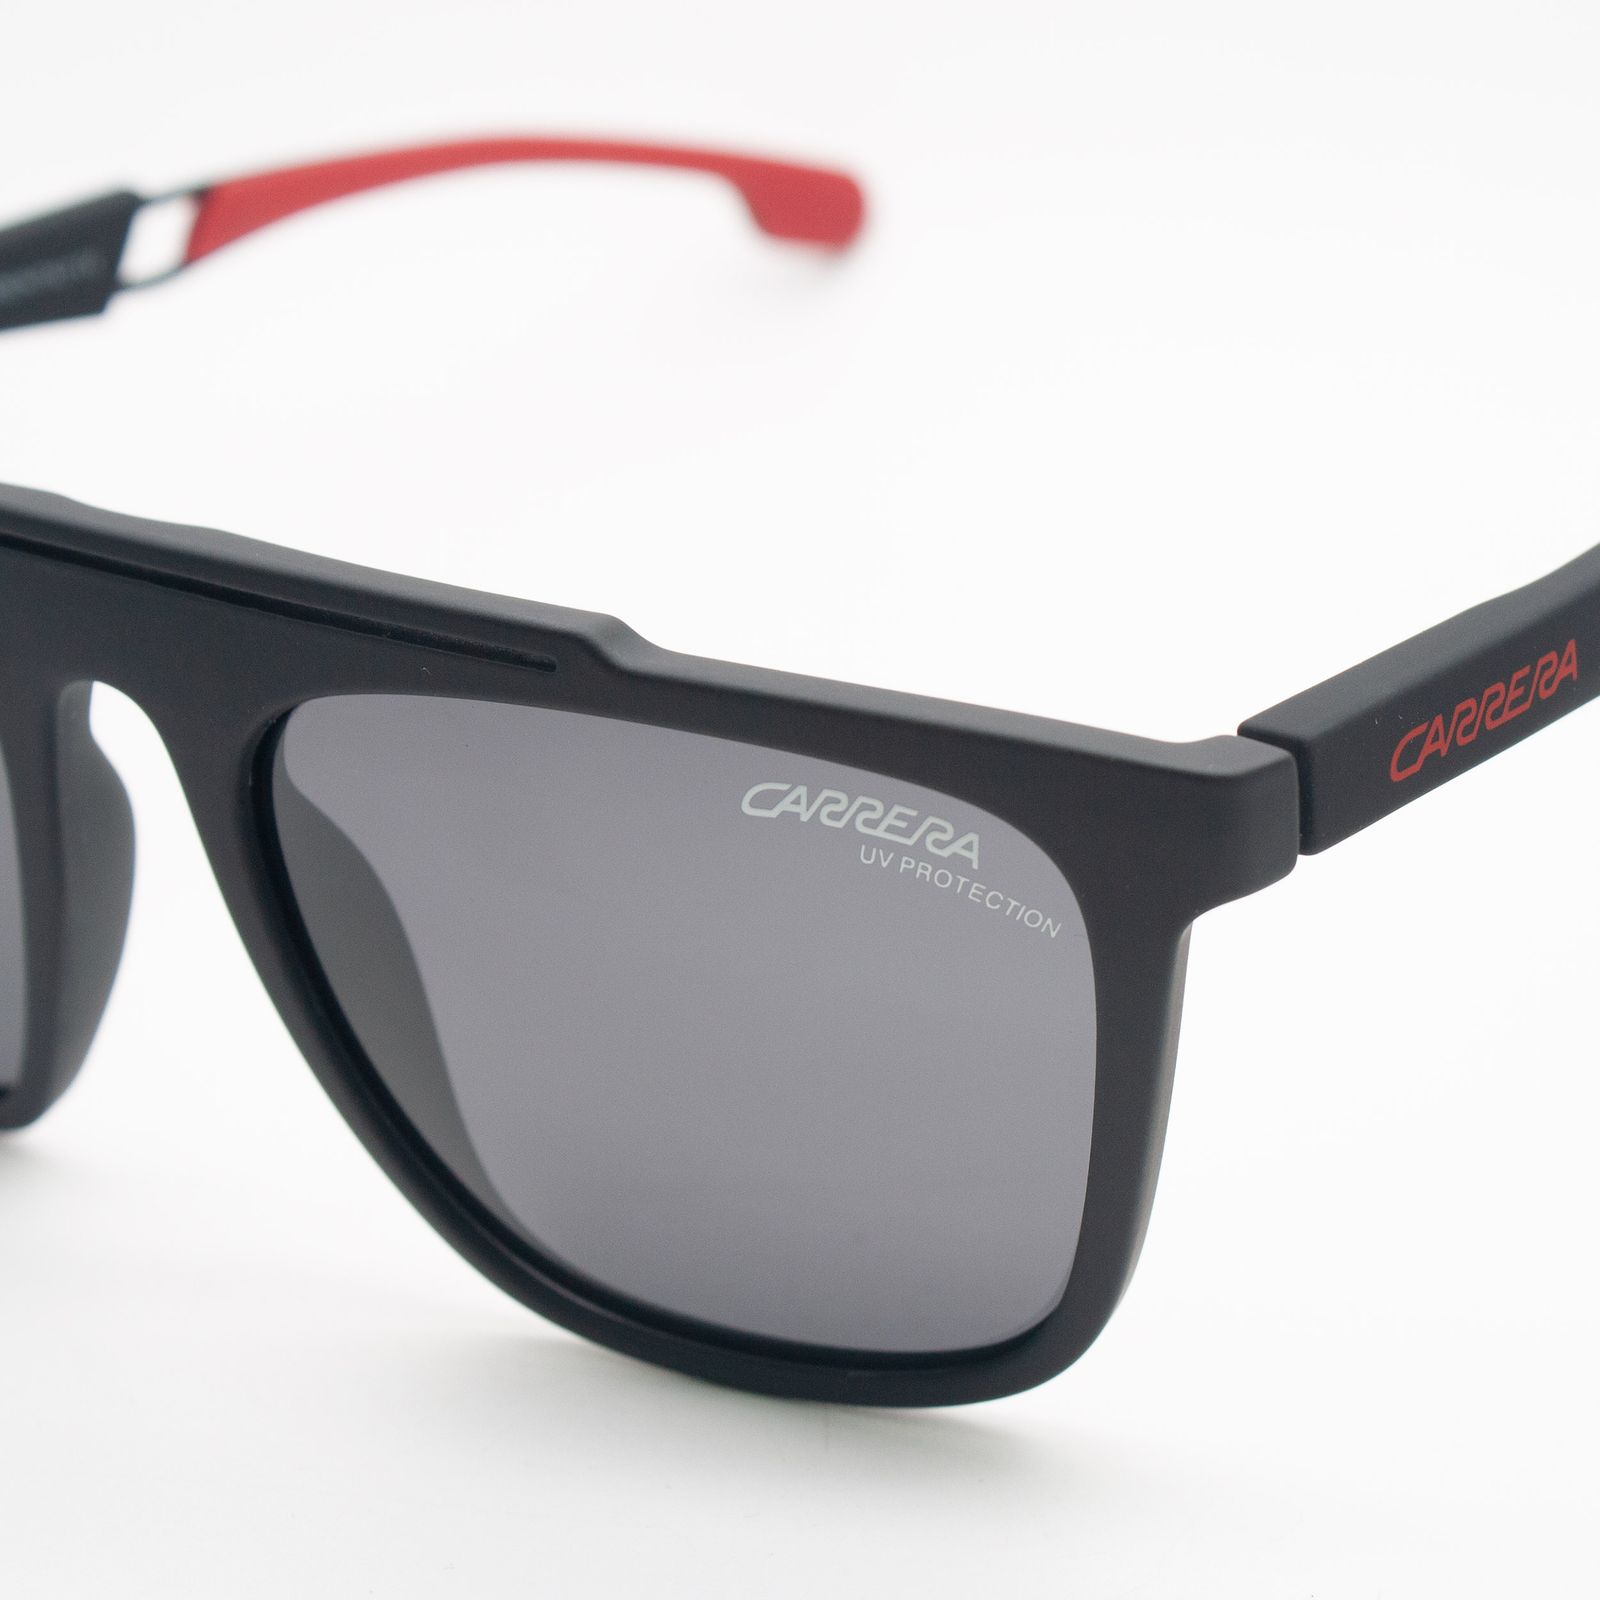 عینک آفتابی کاررا مدل 10036 C4 -  - 5